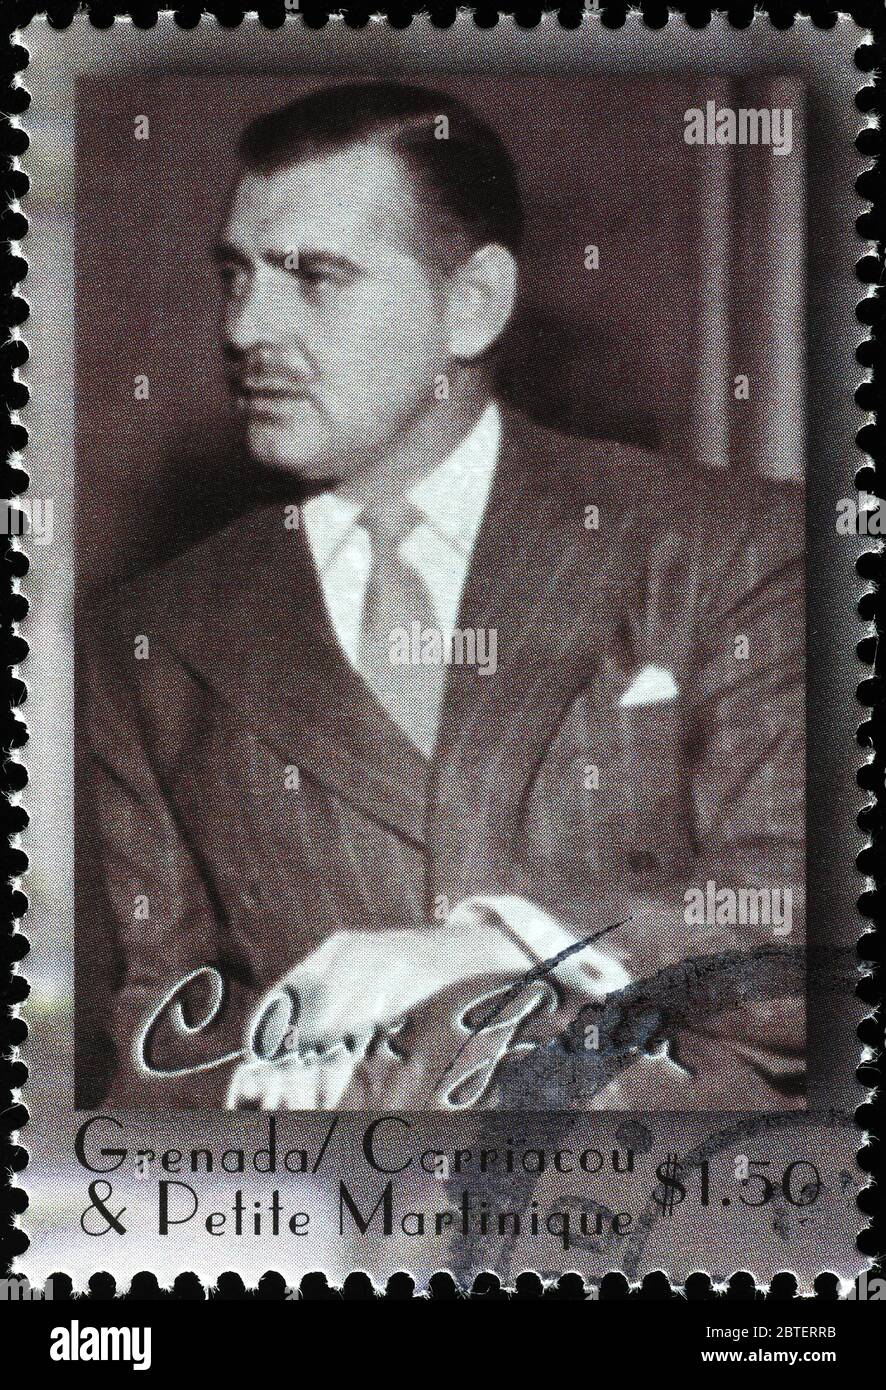 Porträt von Clark Gable auf Briefmarke Stockfoto